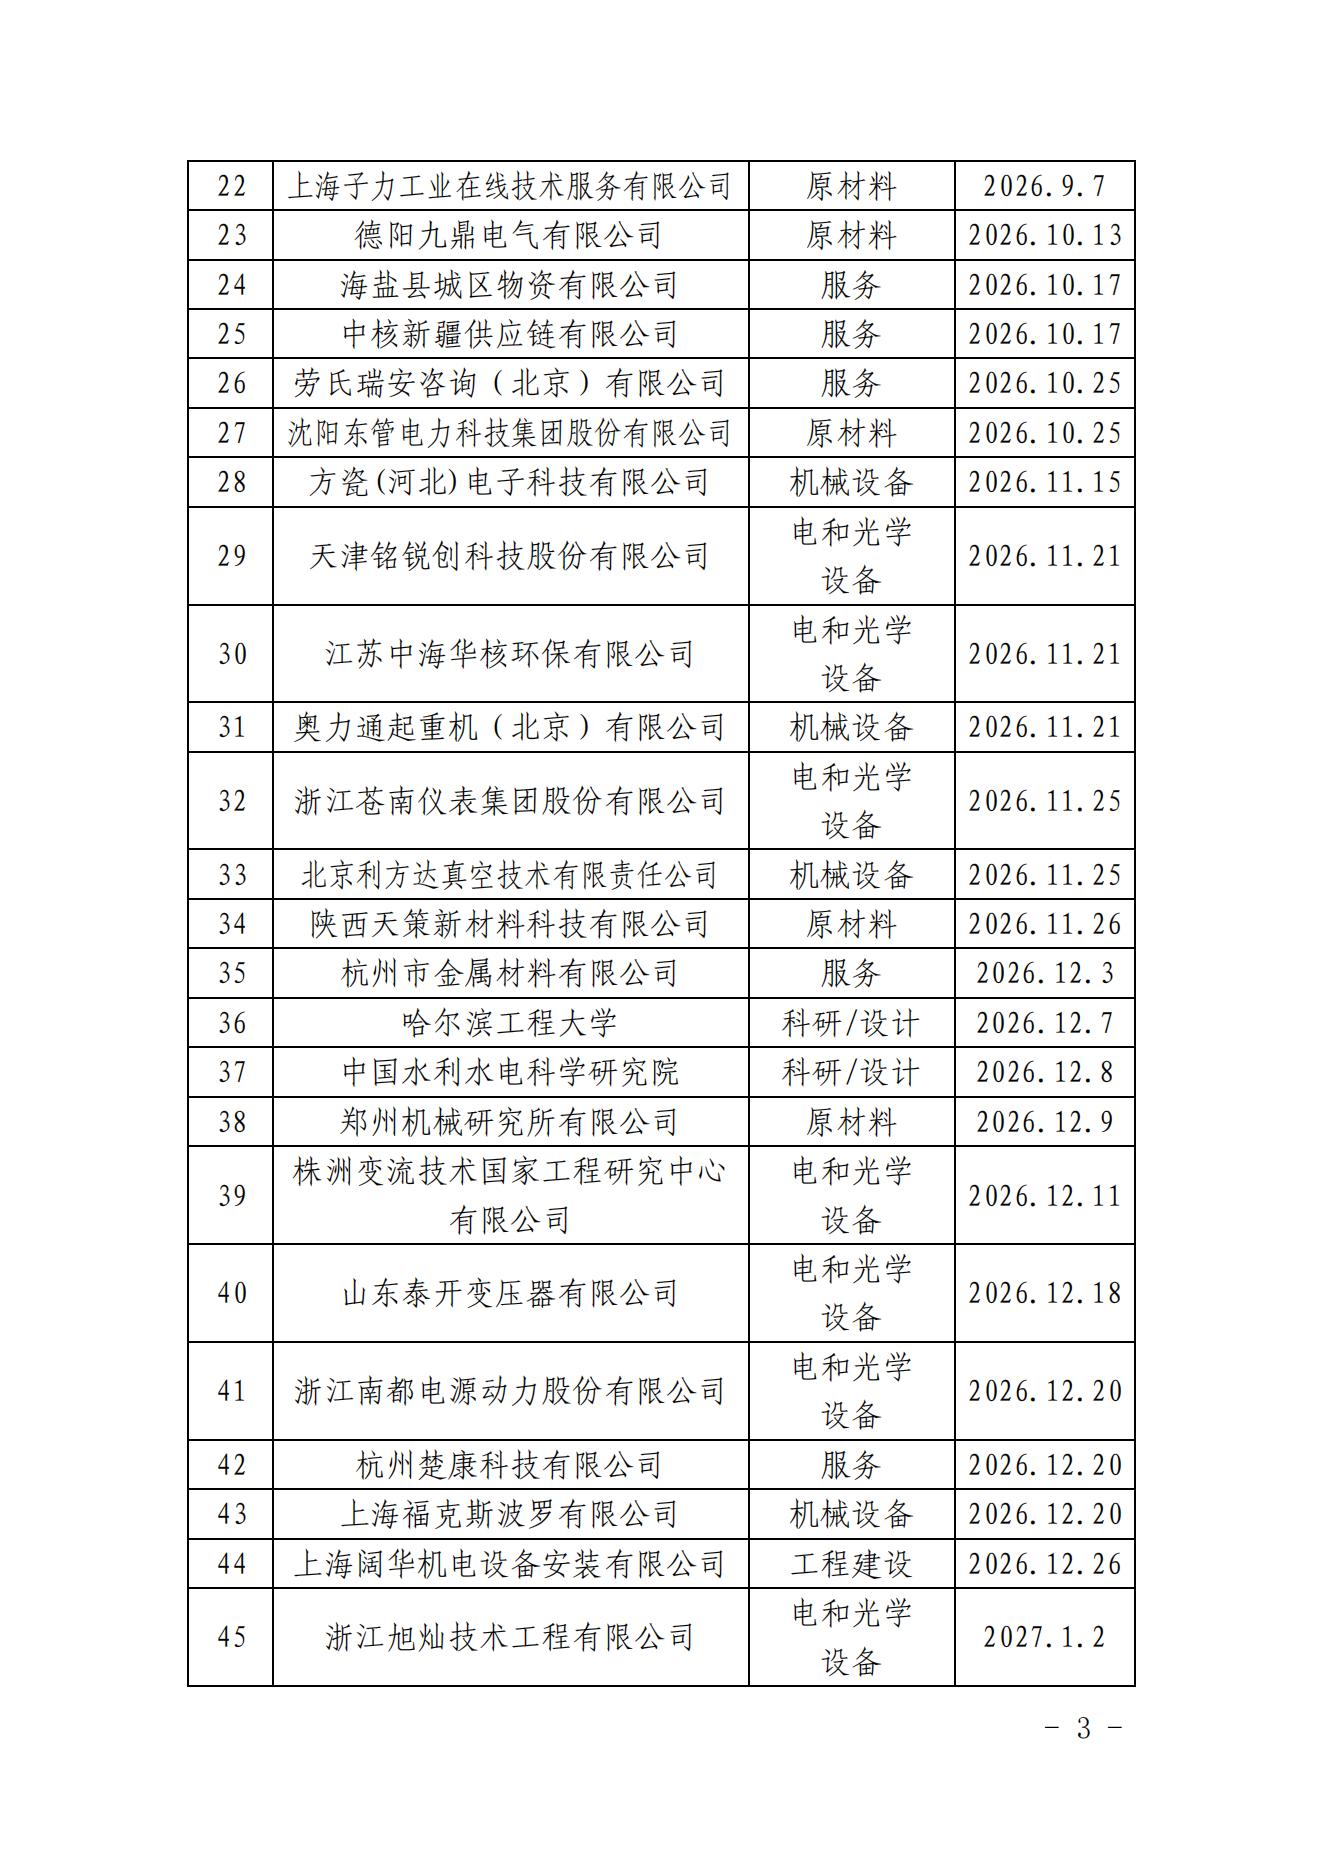 中国核能行业协会关于发布第三十五批核能行业合格供应商名录的公告_02.jpg